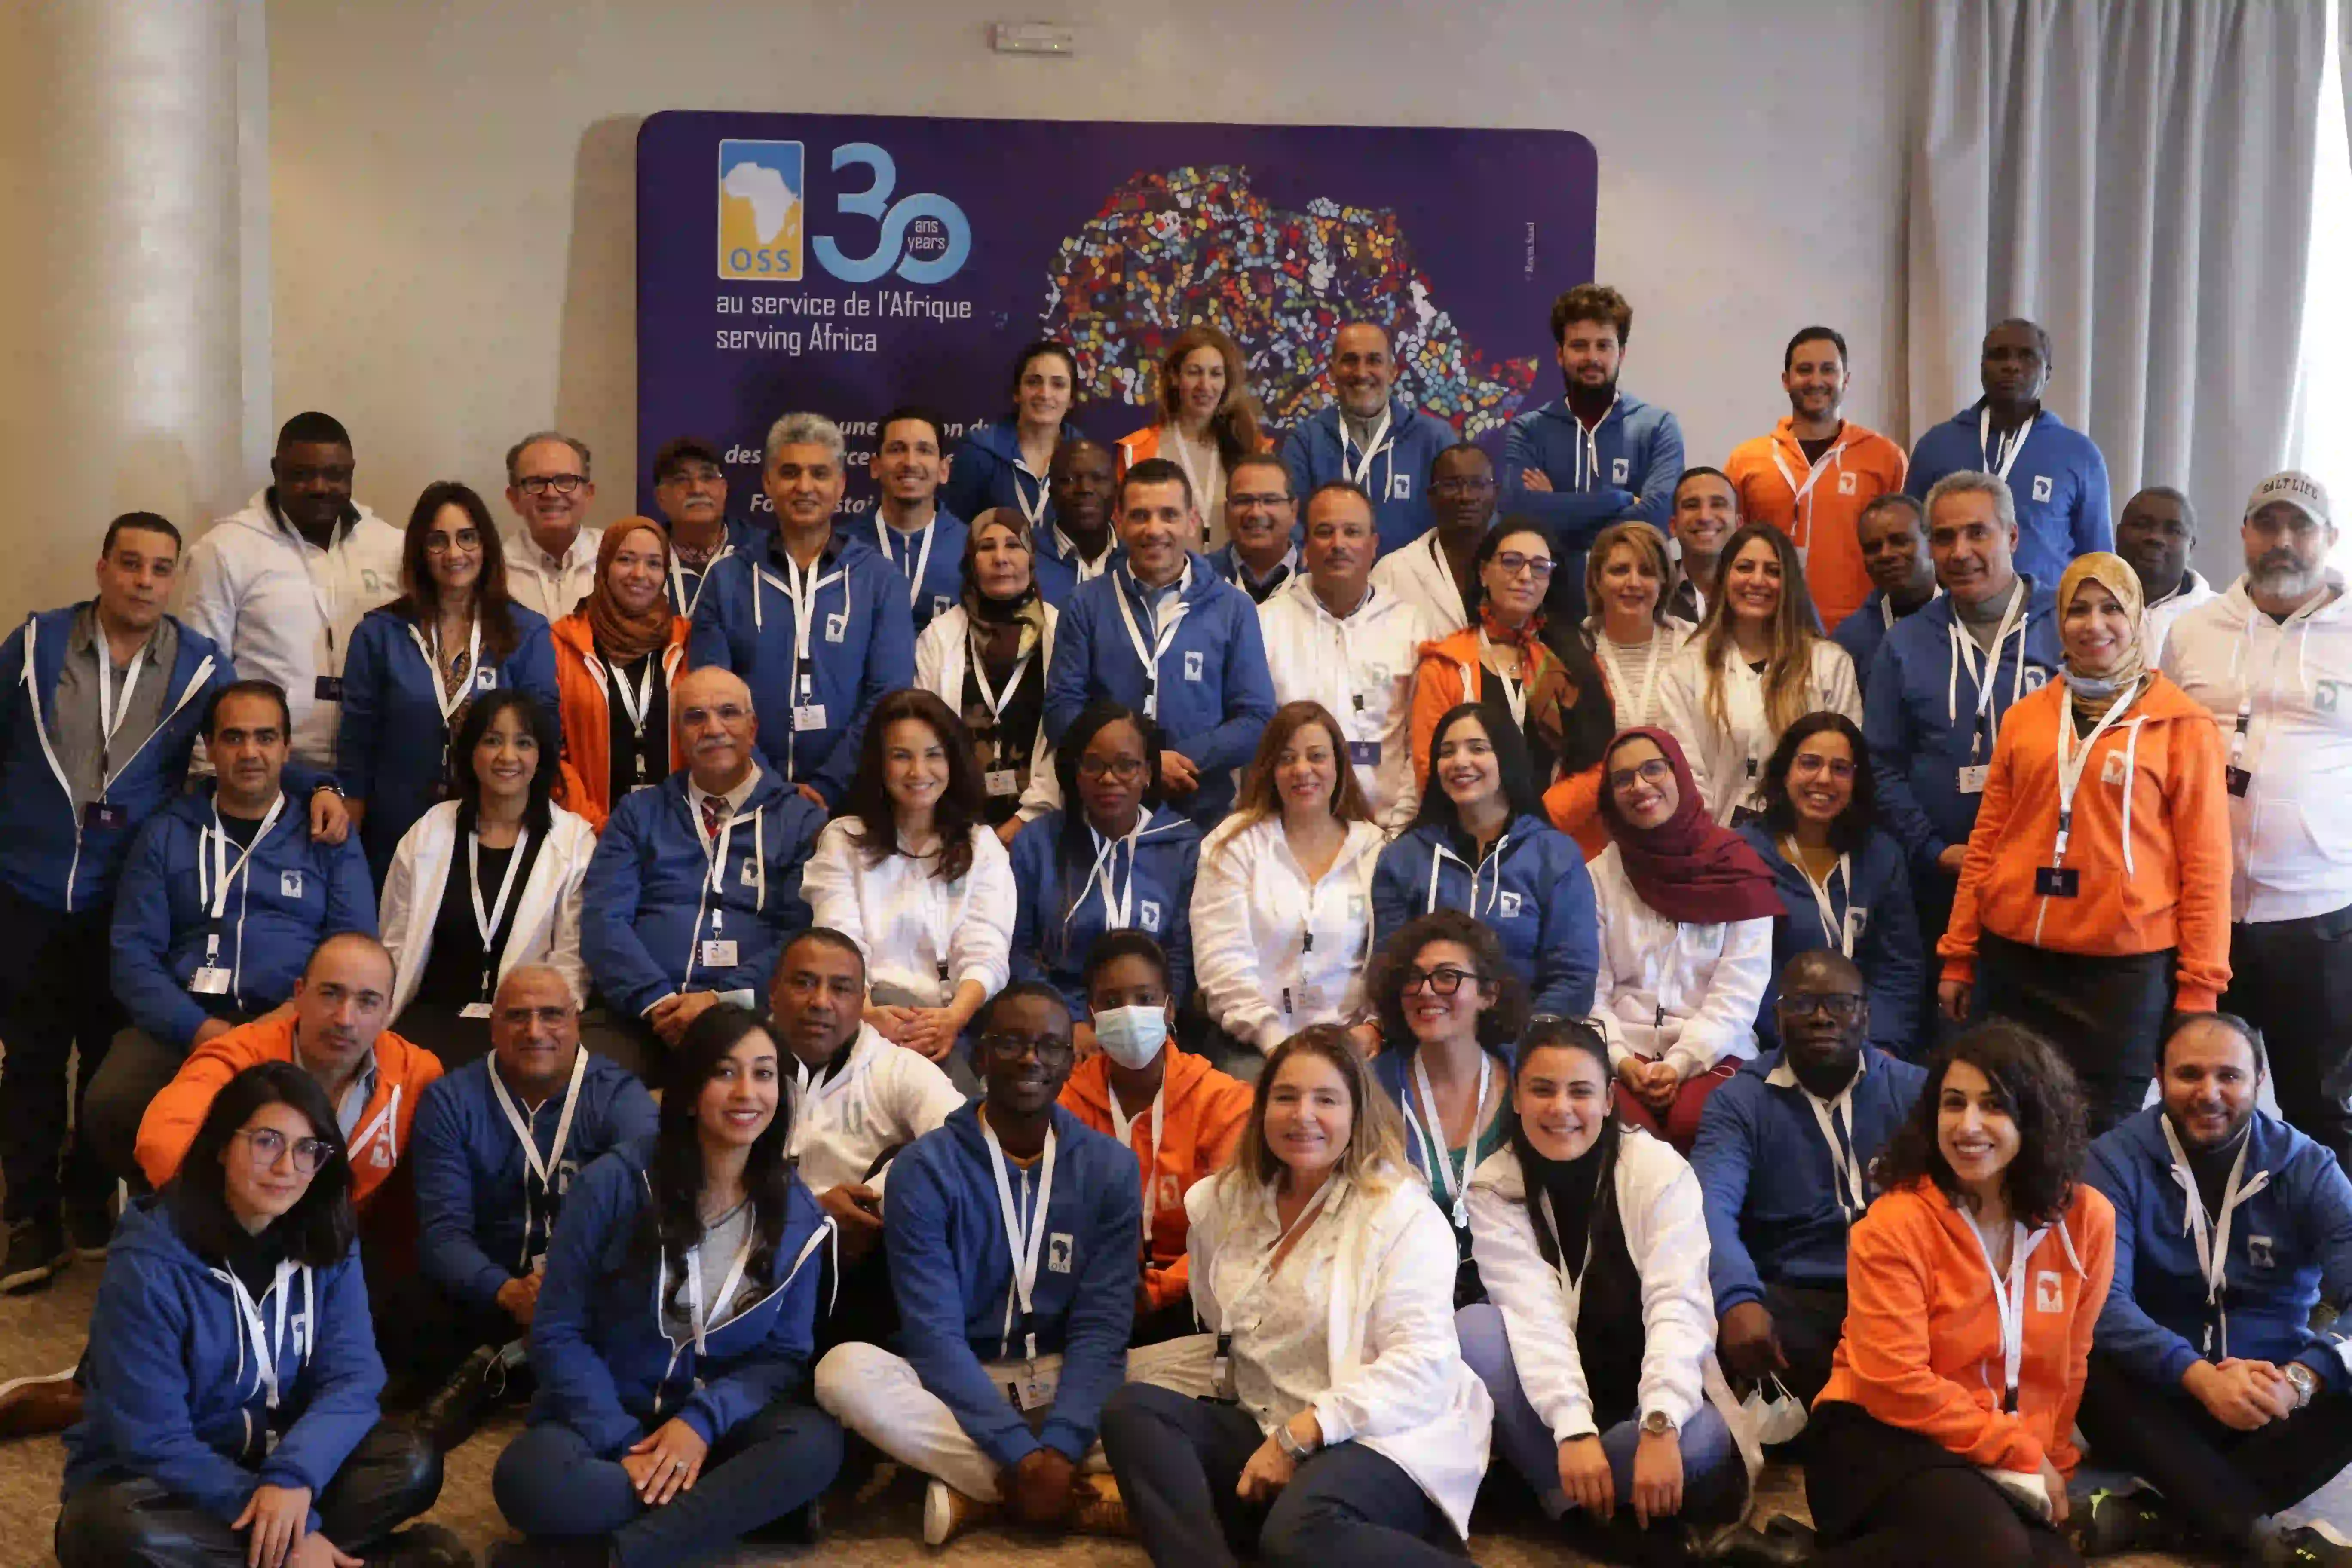 Teilnehmer der Klausurtagung Strategie 2030 der Oganisation "Observatoire du Sahara et du Sahel" (OSS)